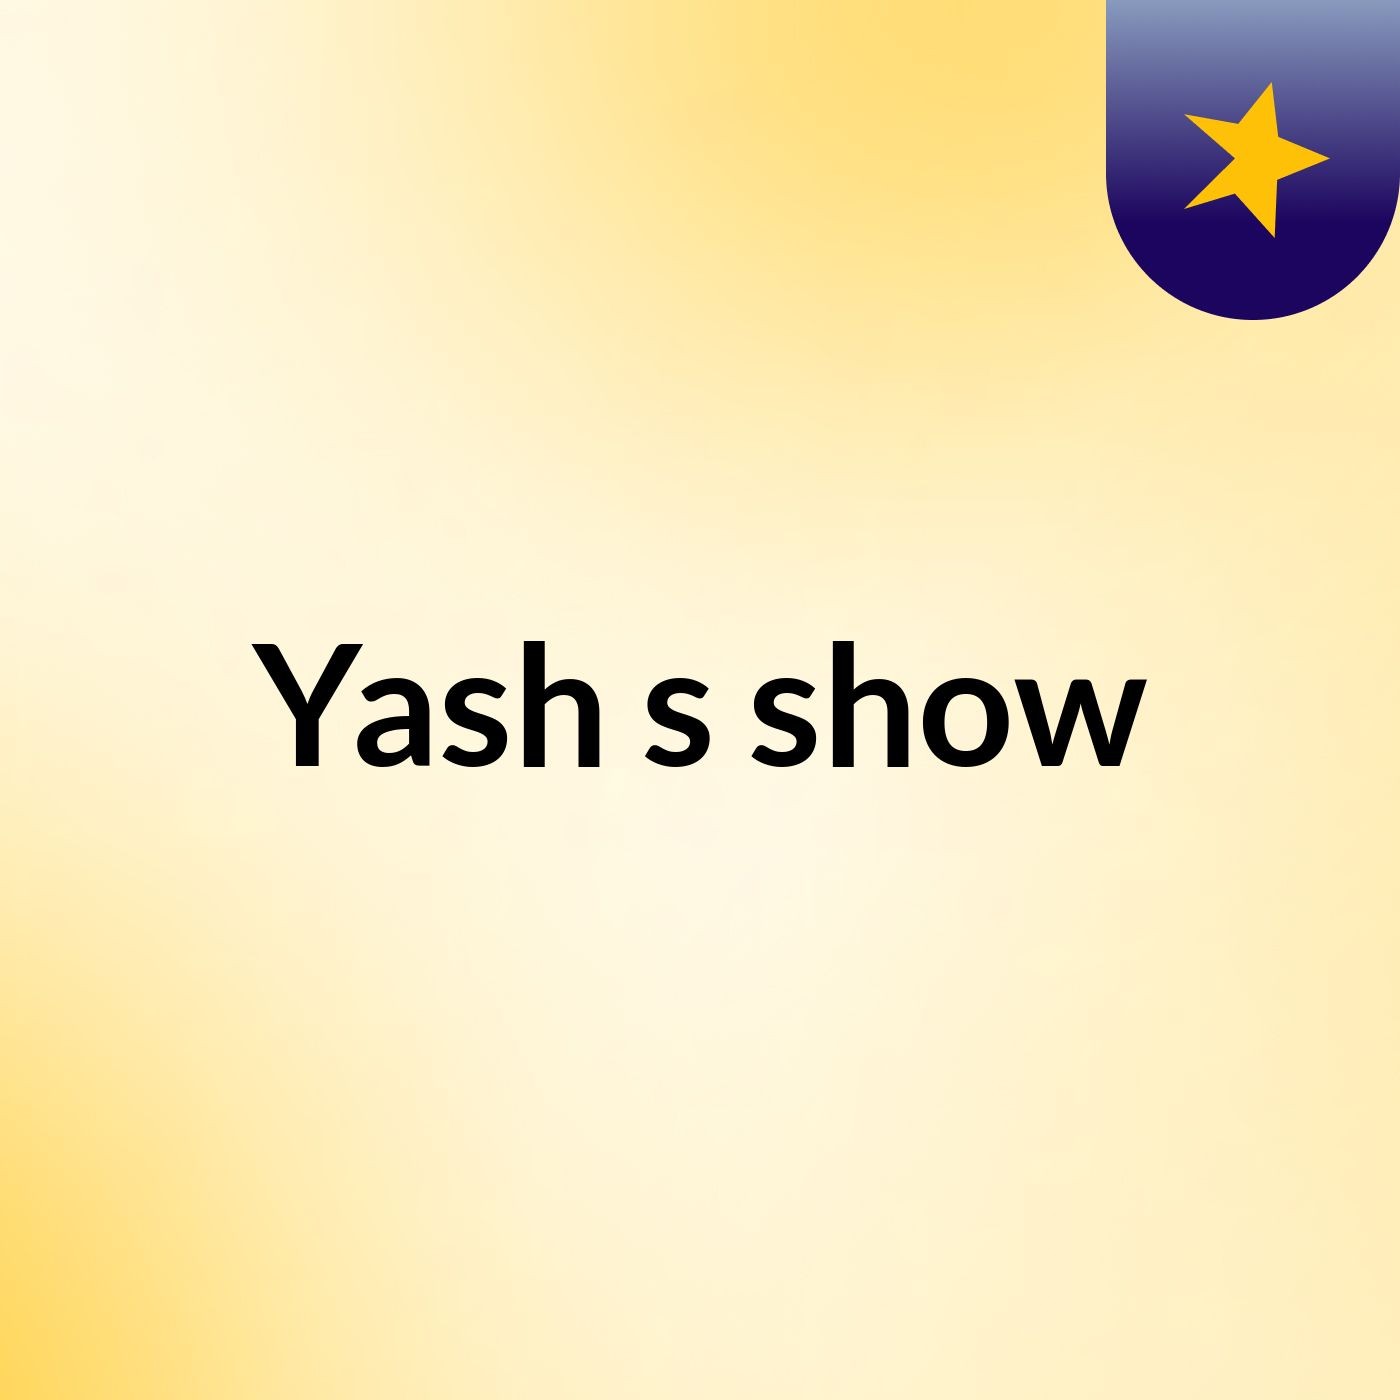 Yash's show